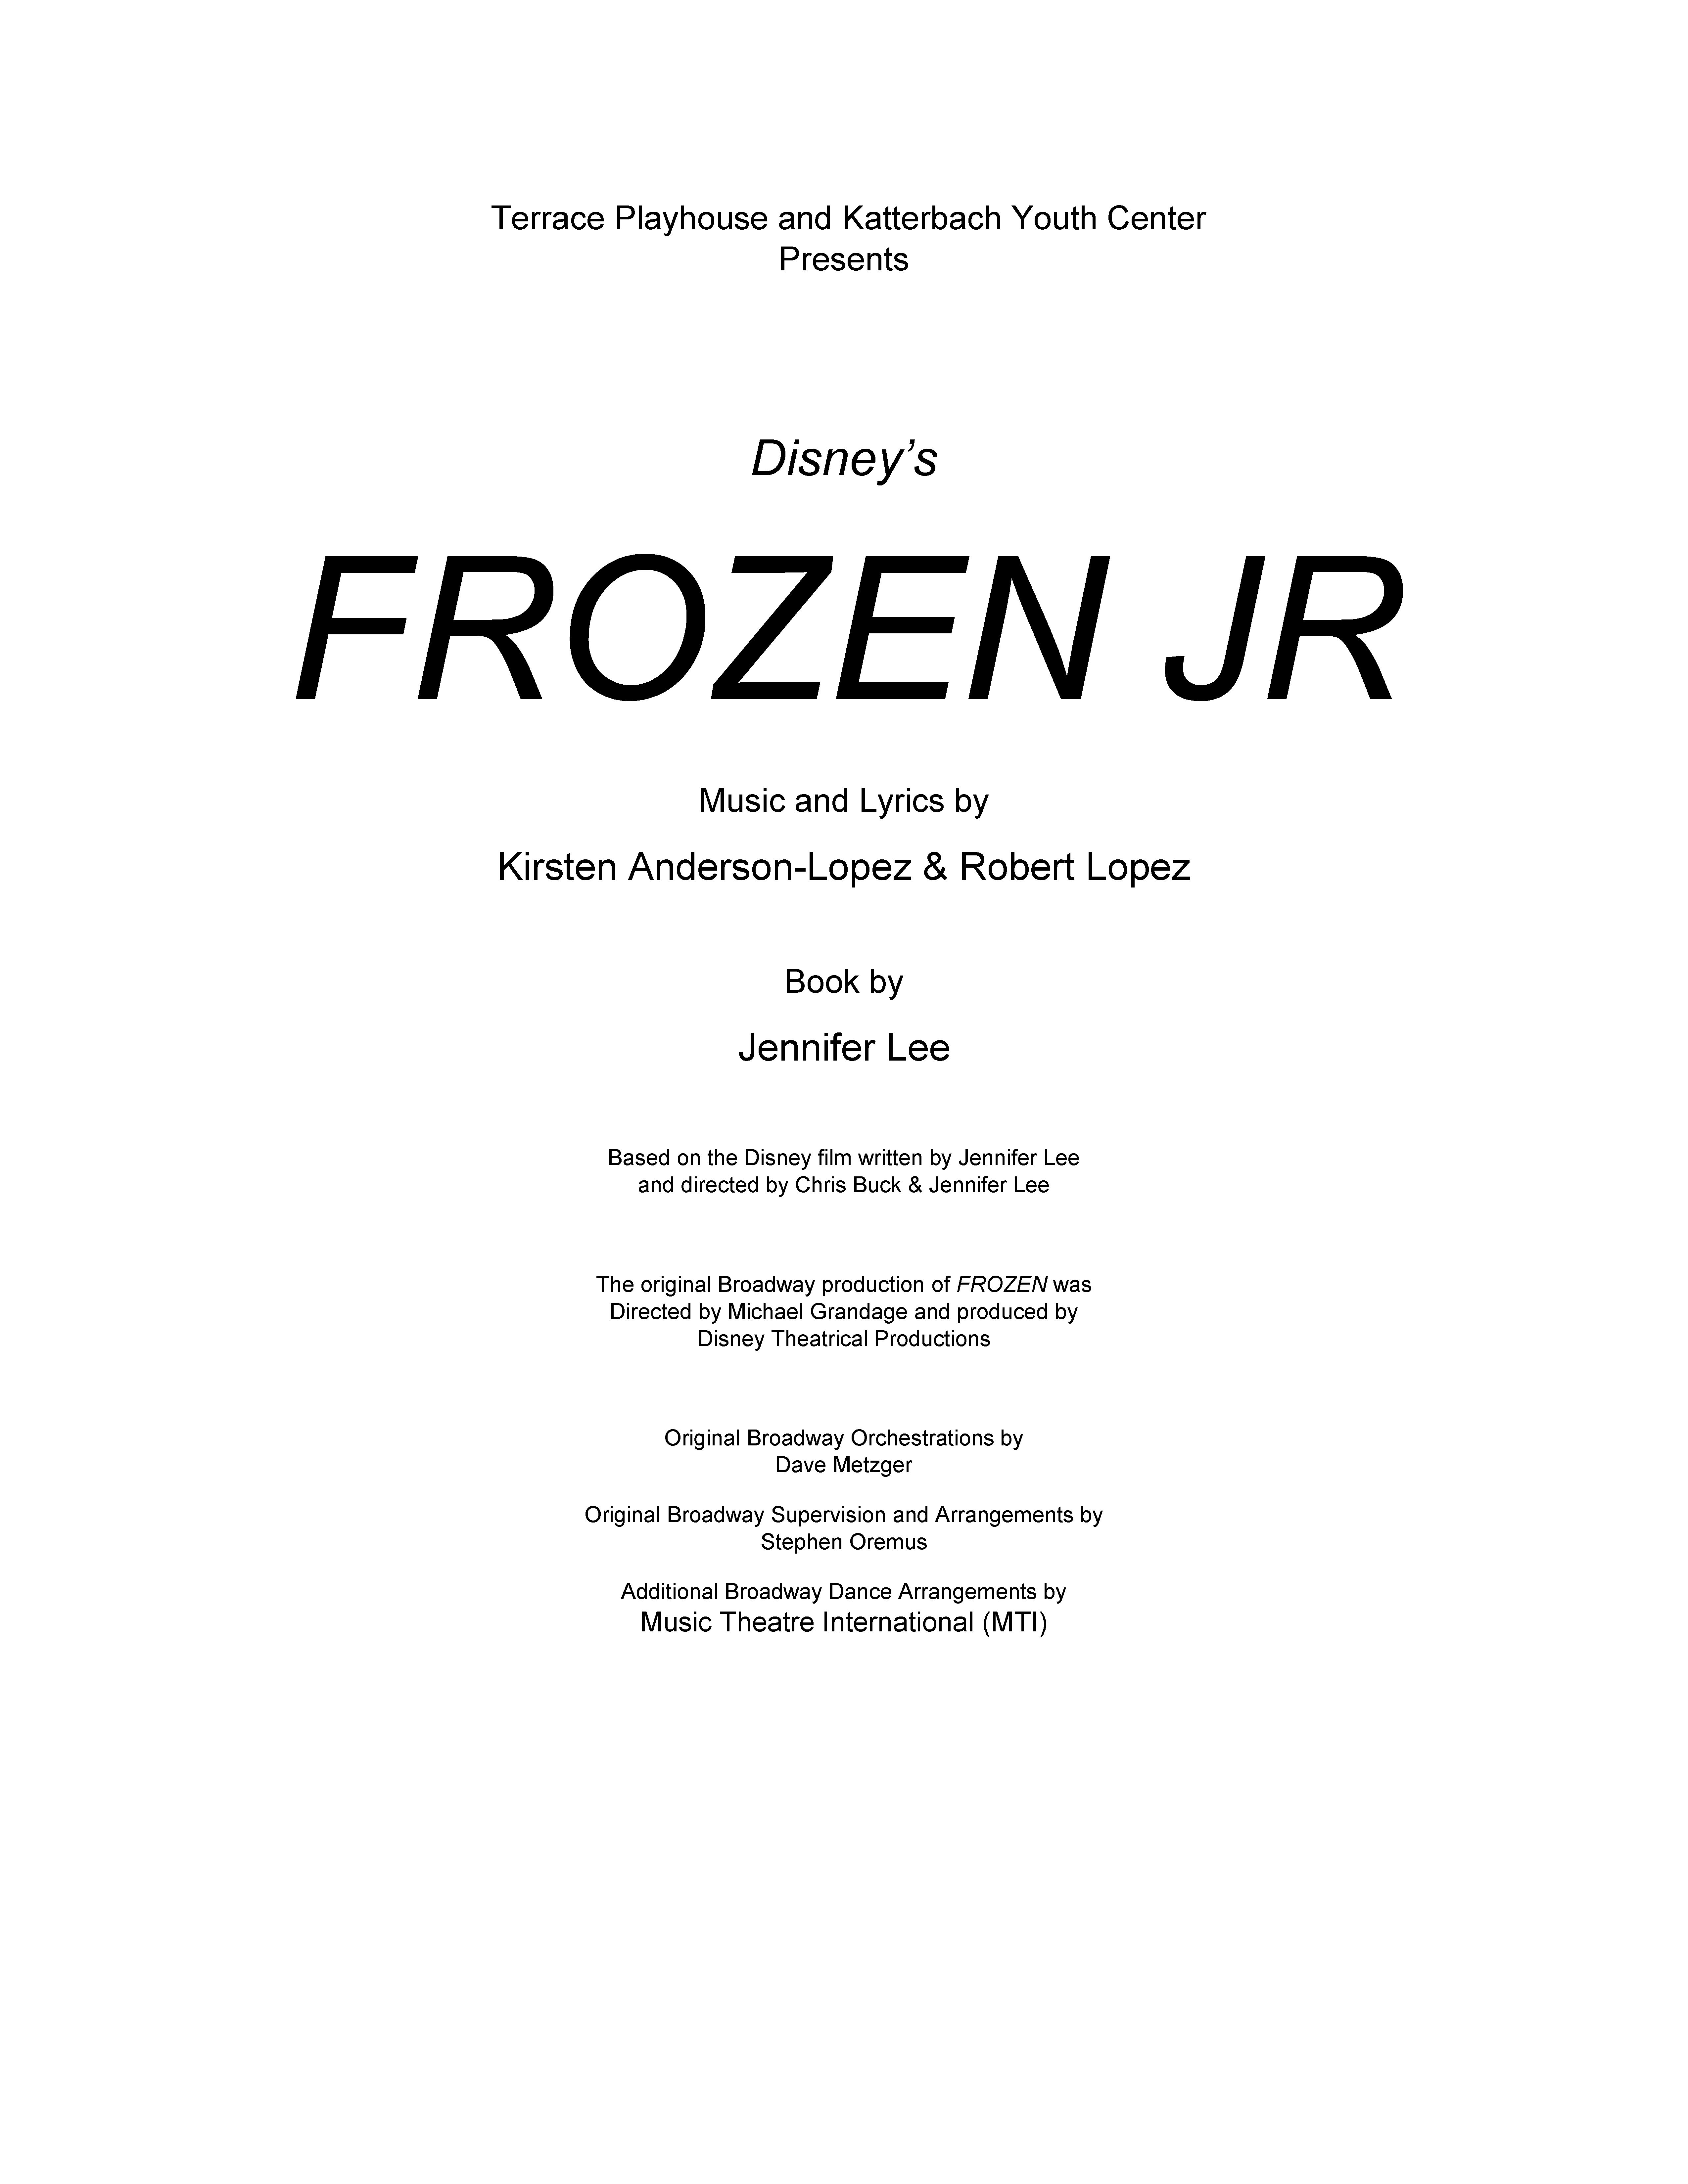 Frozen Progam_Page_1.jpg